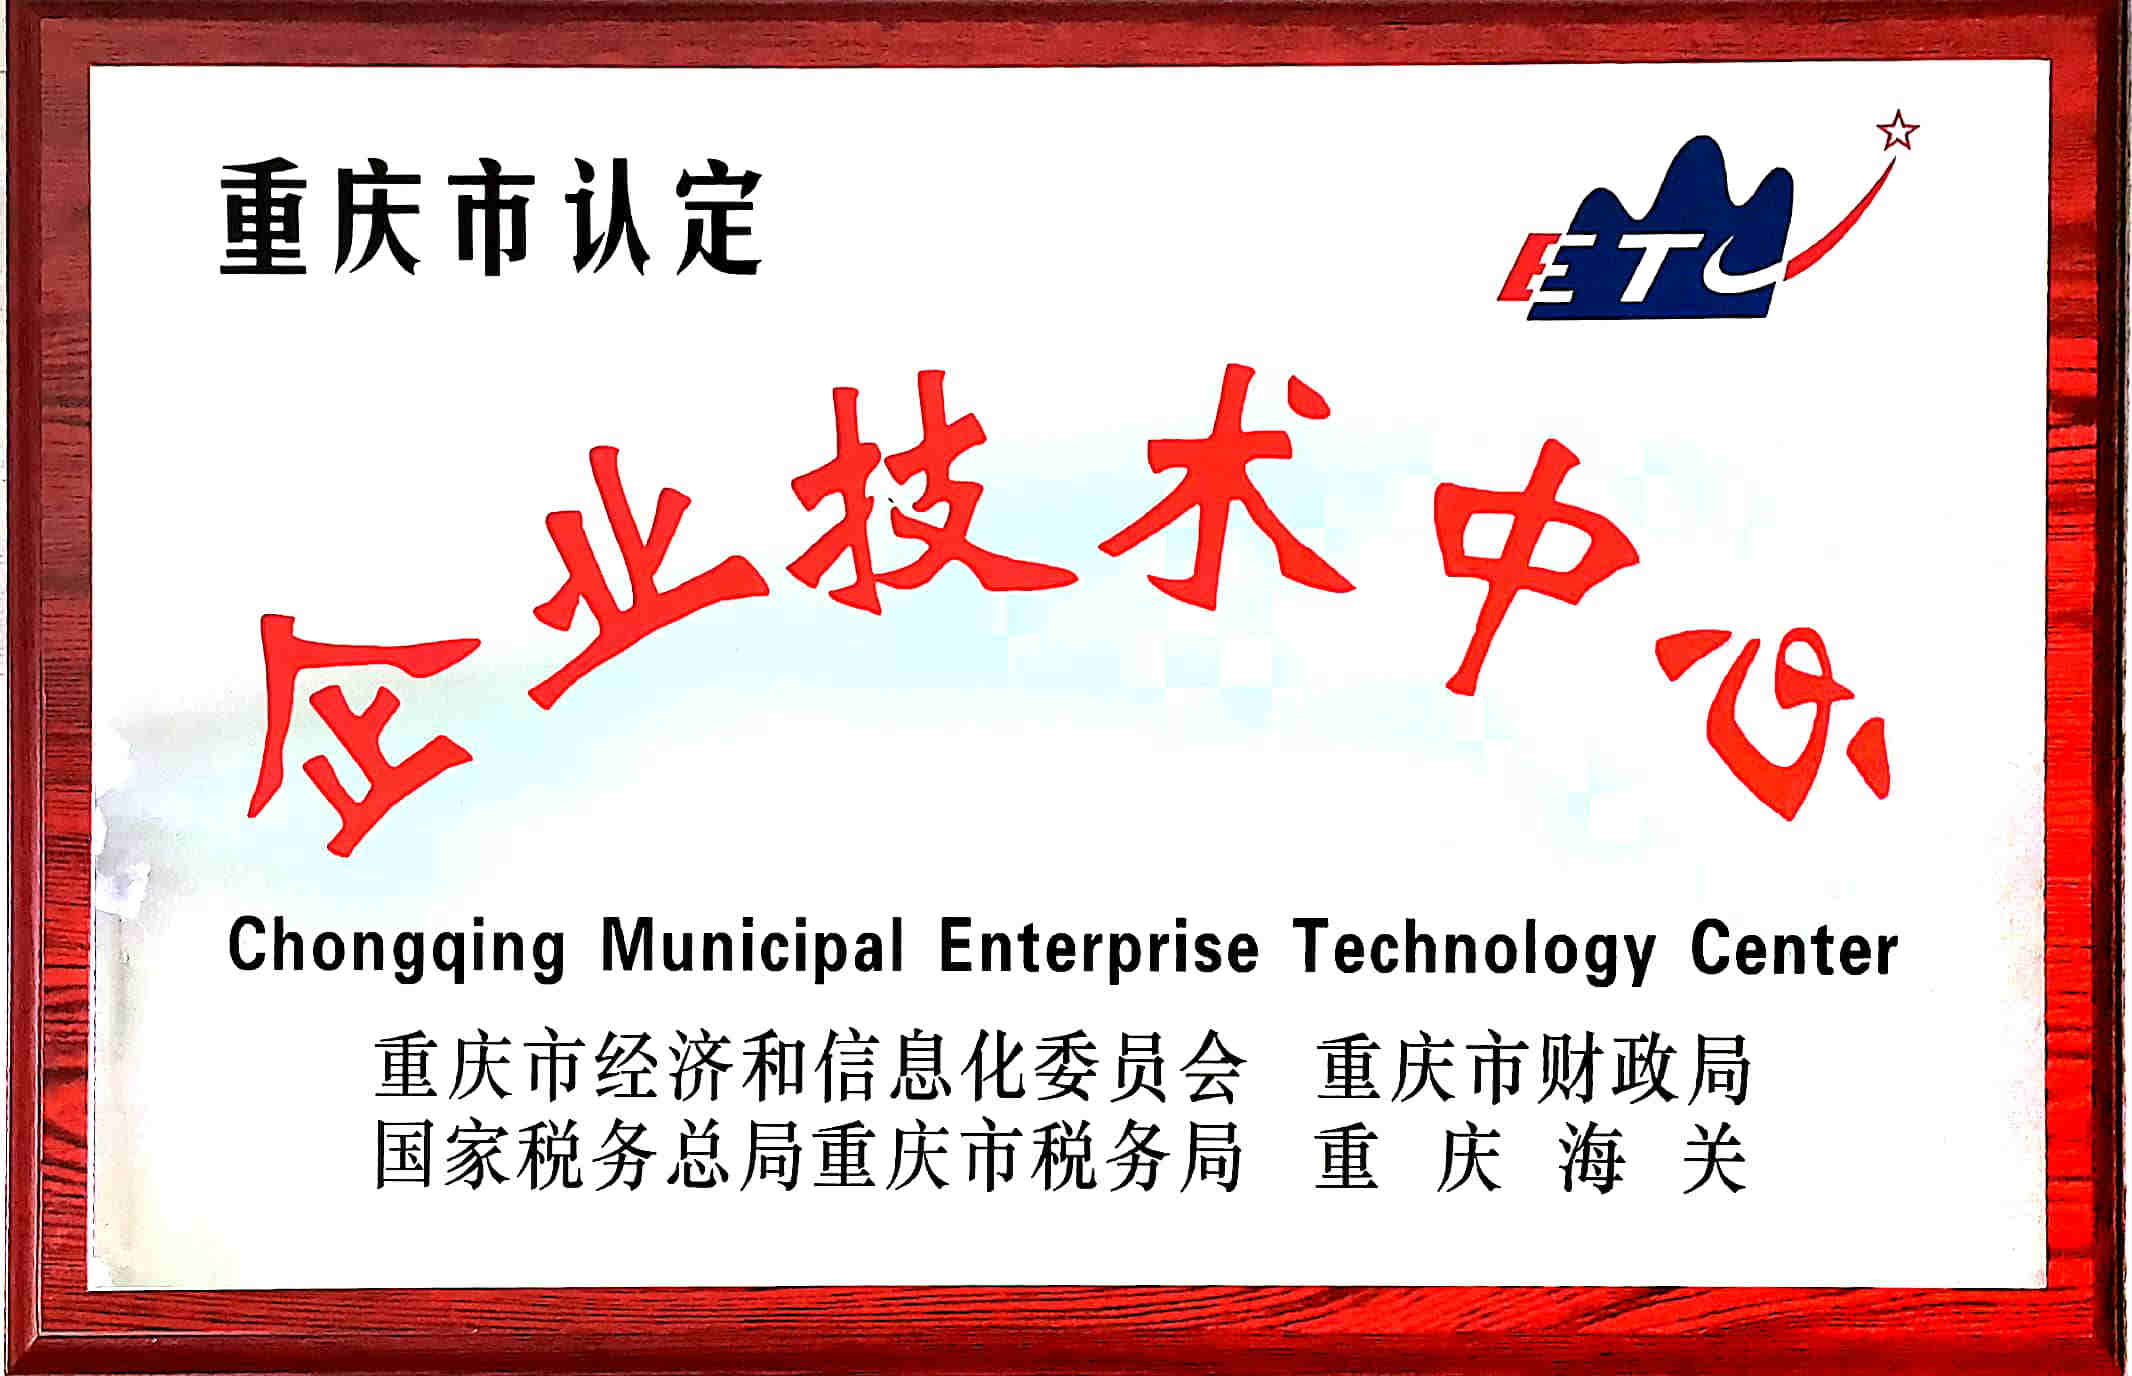 祝贺公司技术研发中心被认定为重庆市企业技术中心